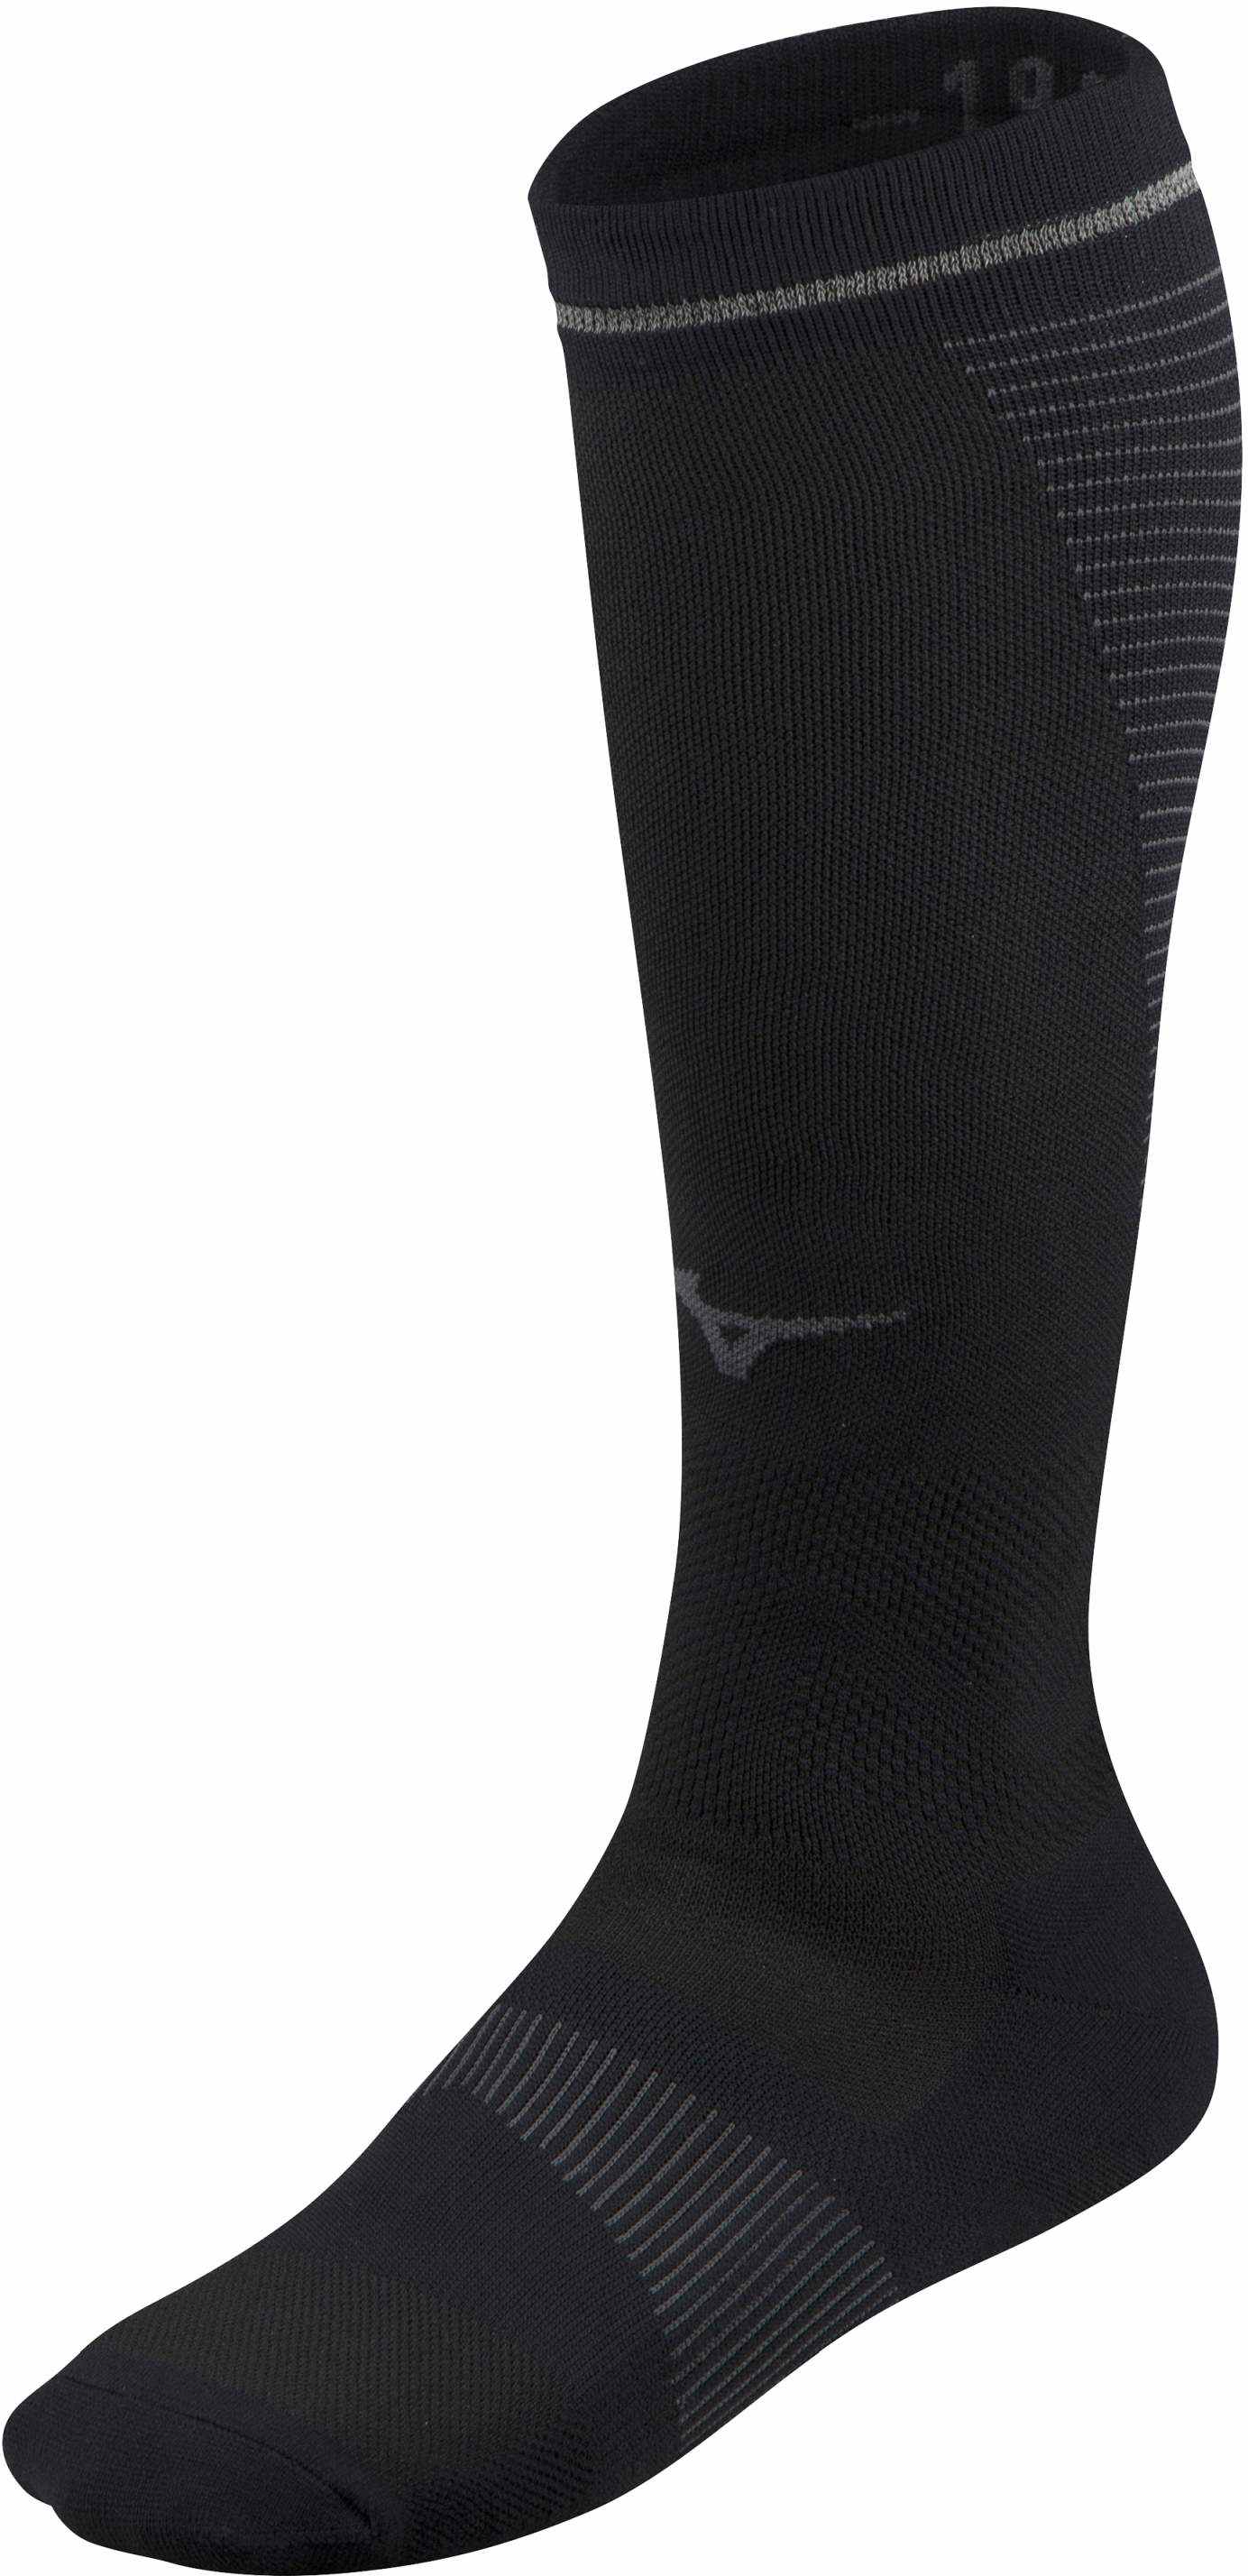 Unisex compression knee socks